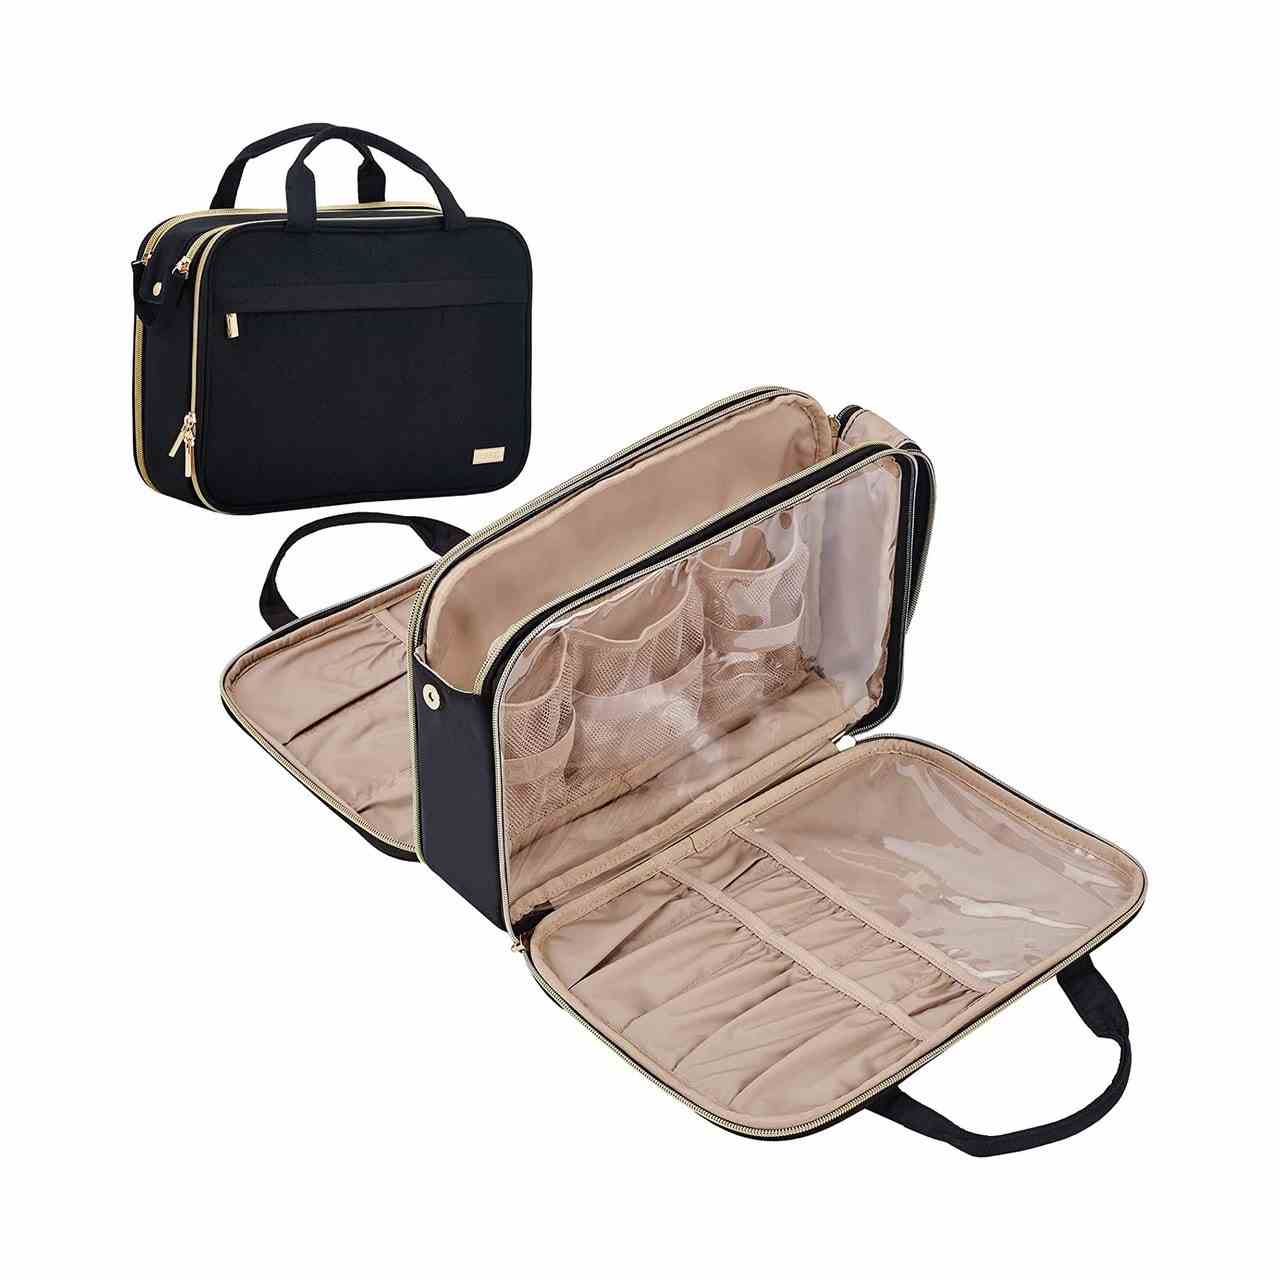 Nishel Travel Toiletry Bag Schwarze Kosmetiktasche mit hellbraunem Futter und Taschen auf weißem Hintergrund